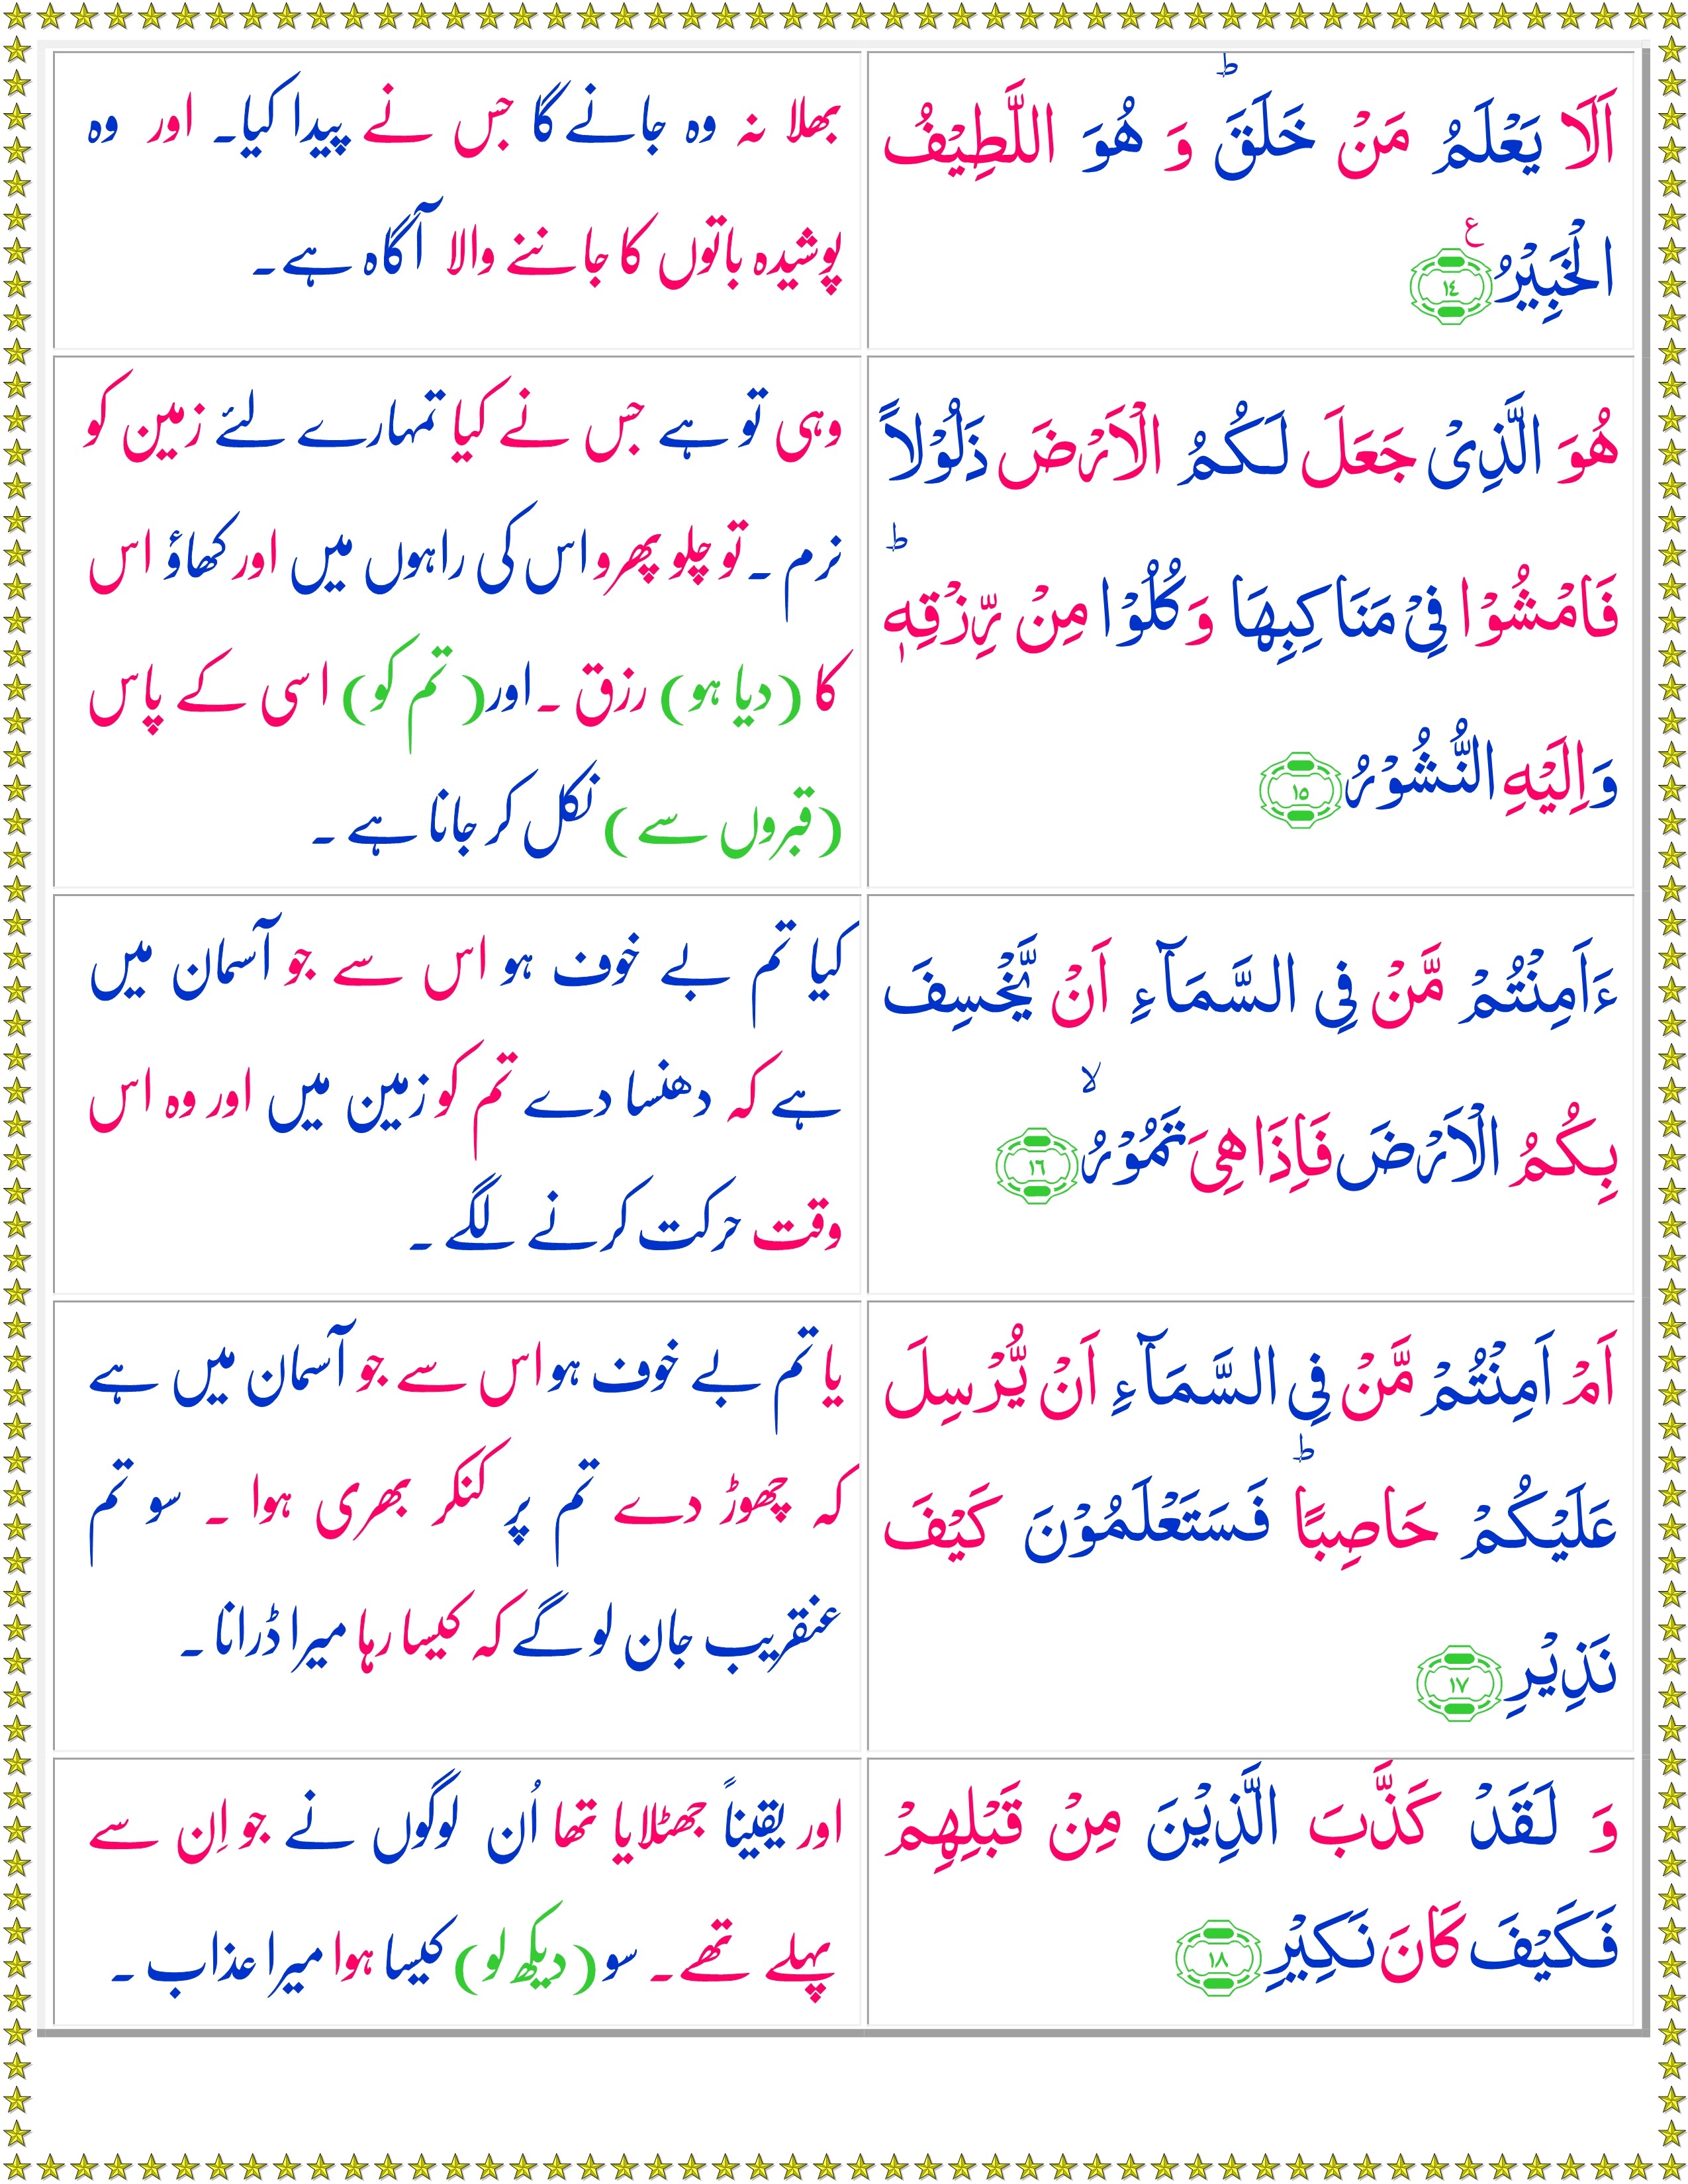 Quran Surah: Surah Al-Mulk